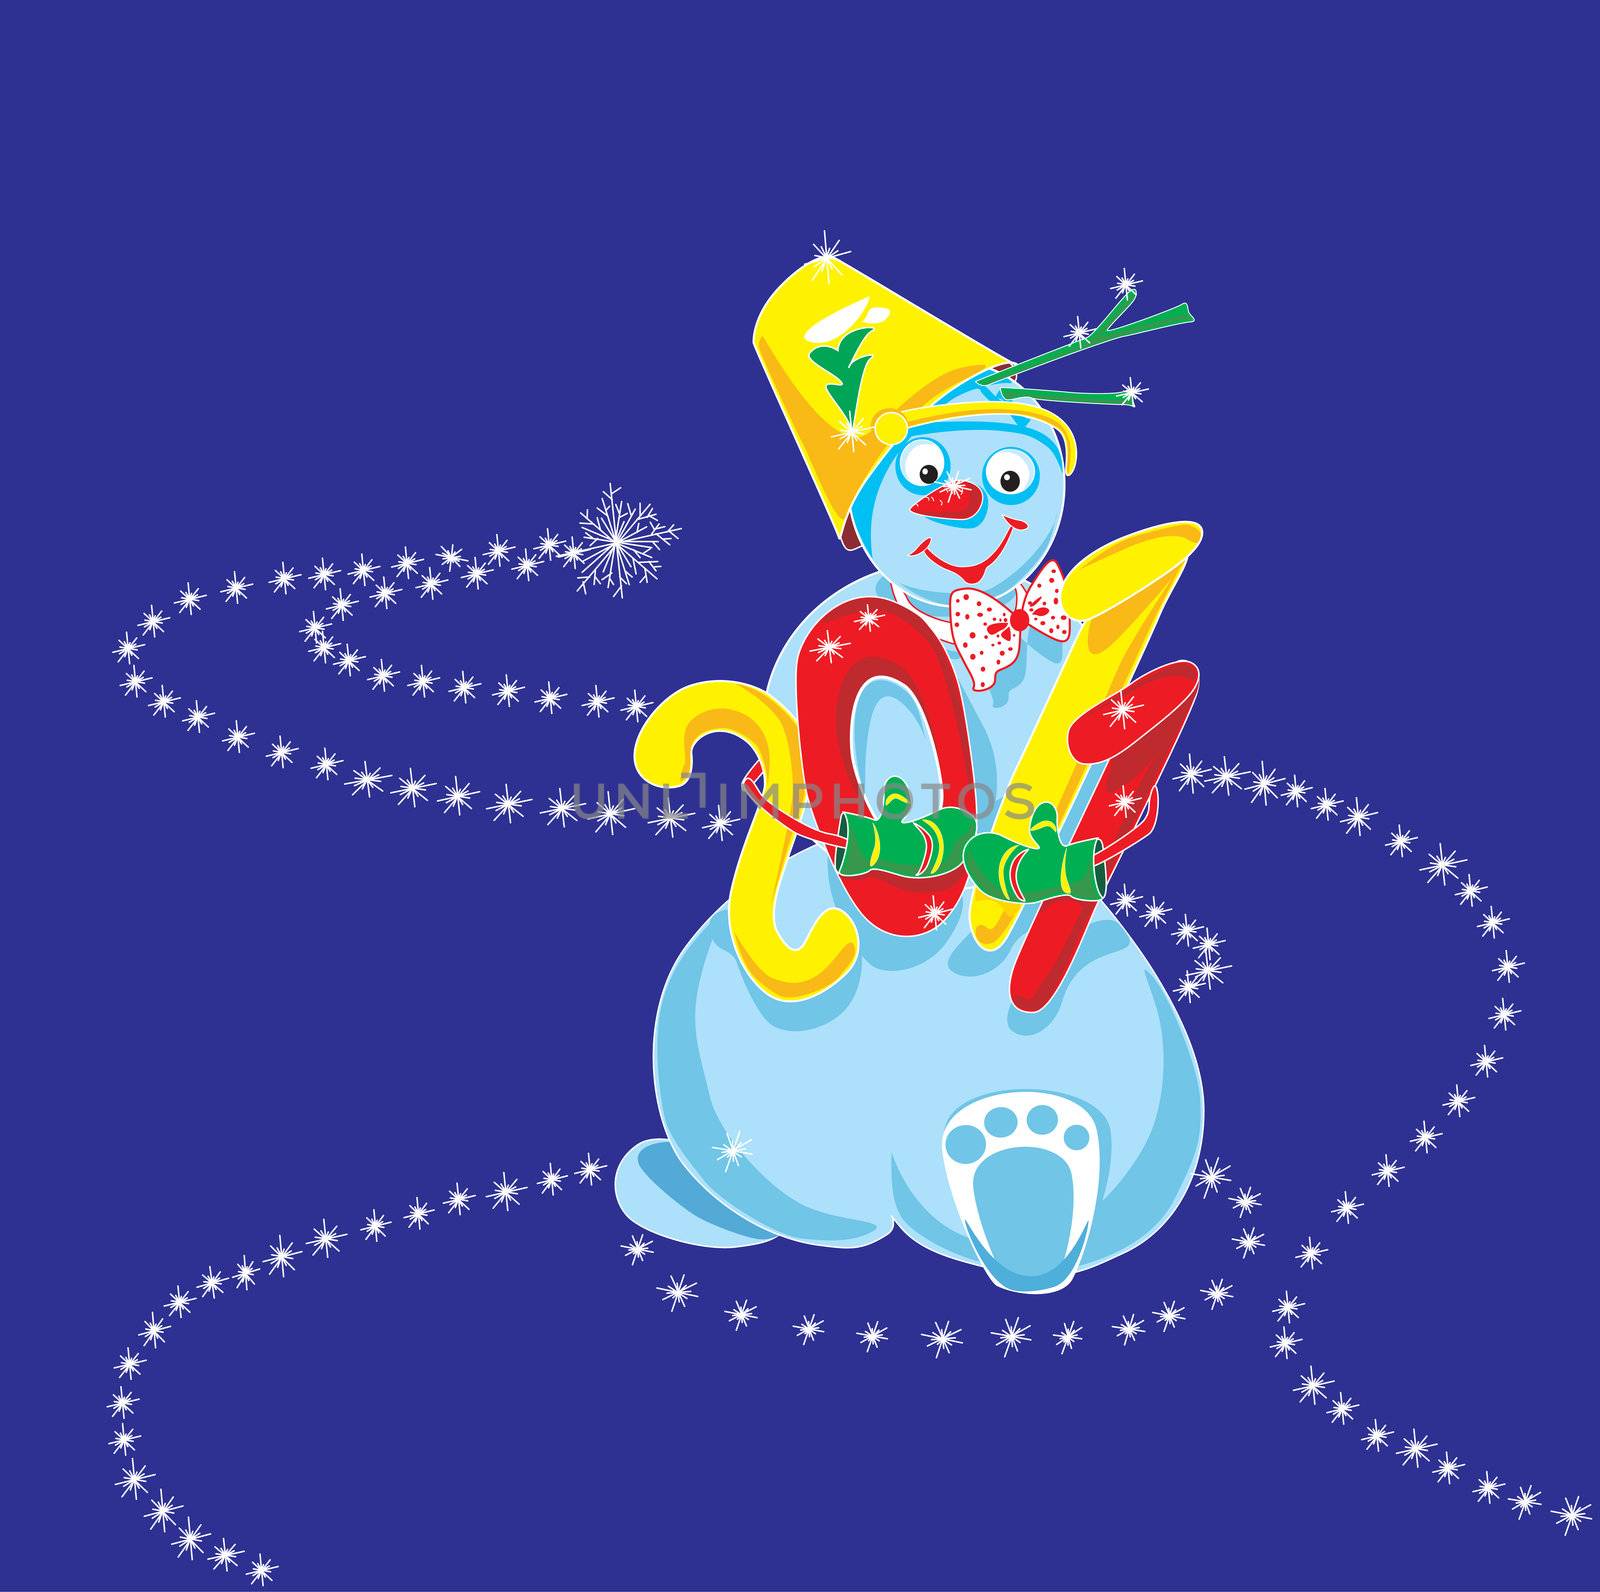 2011, snowman by Lyudmila